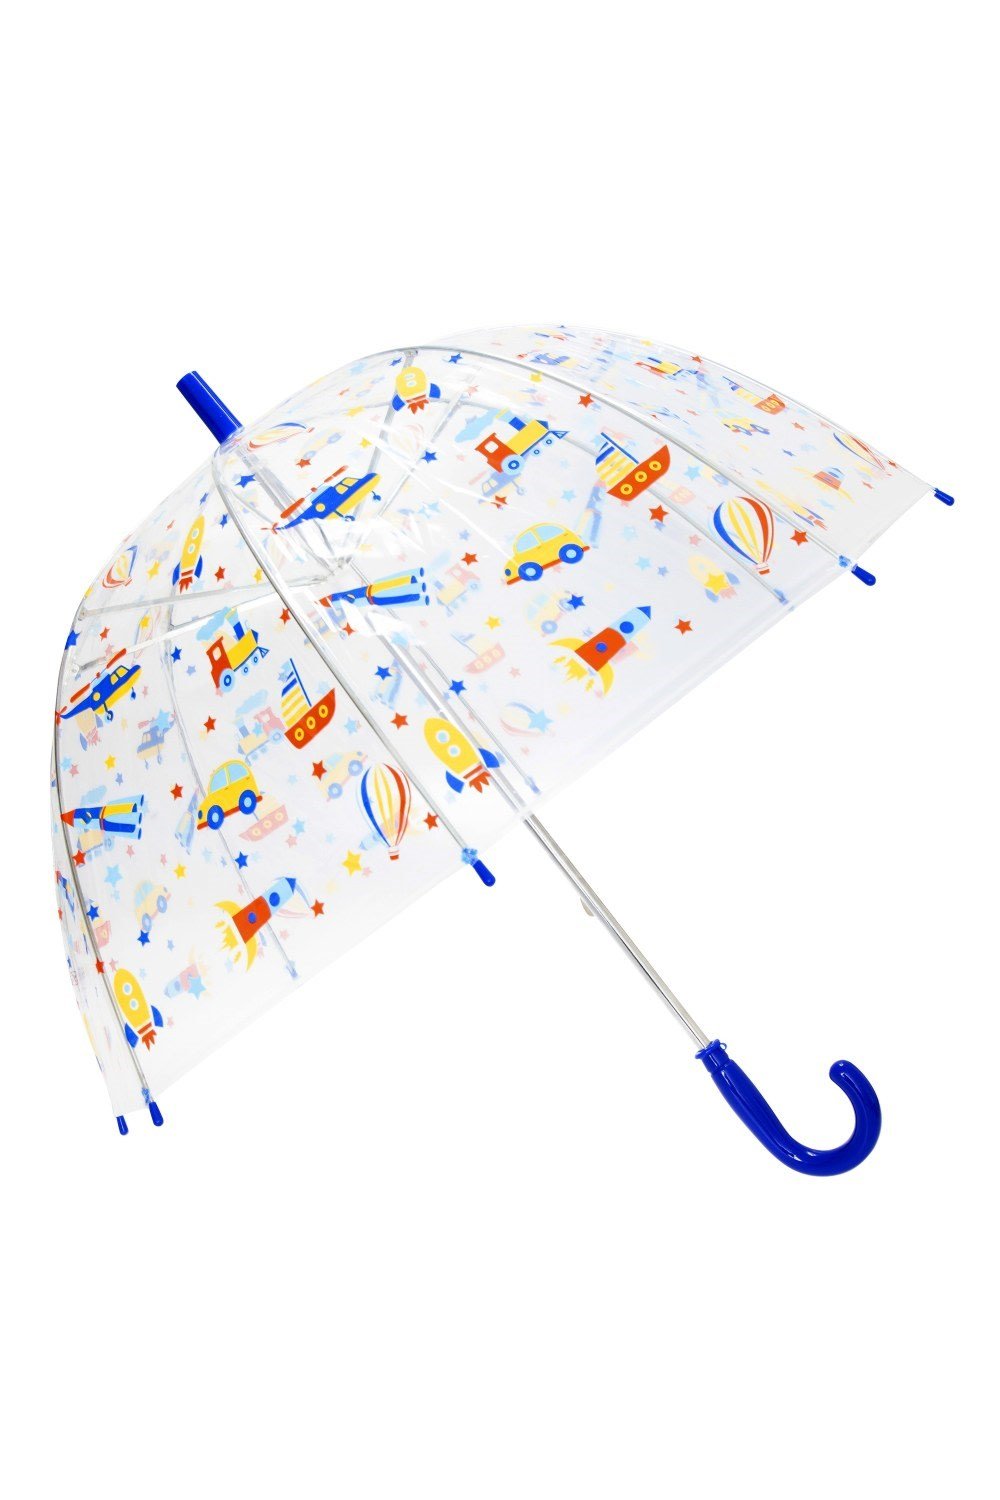 Kids Cars & Planes Umbrella -